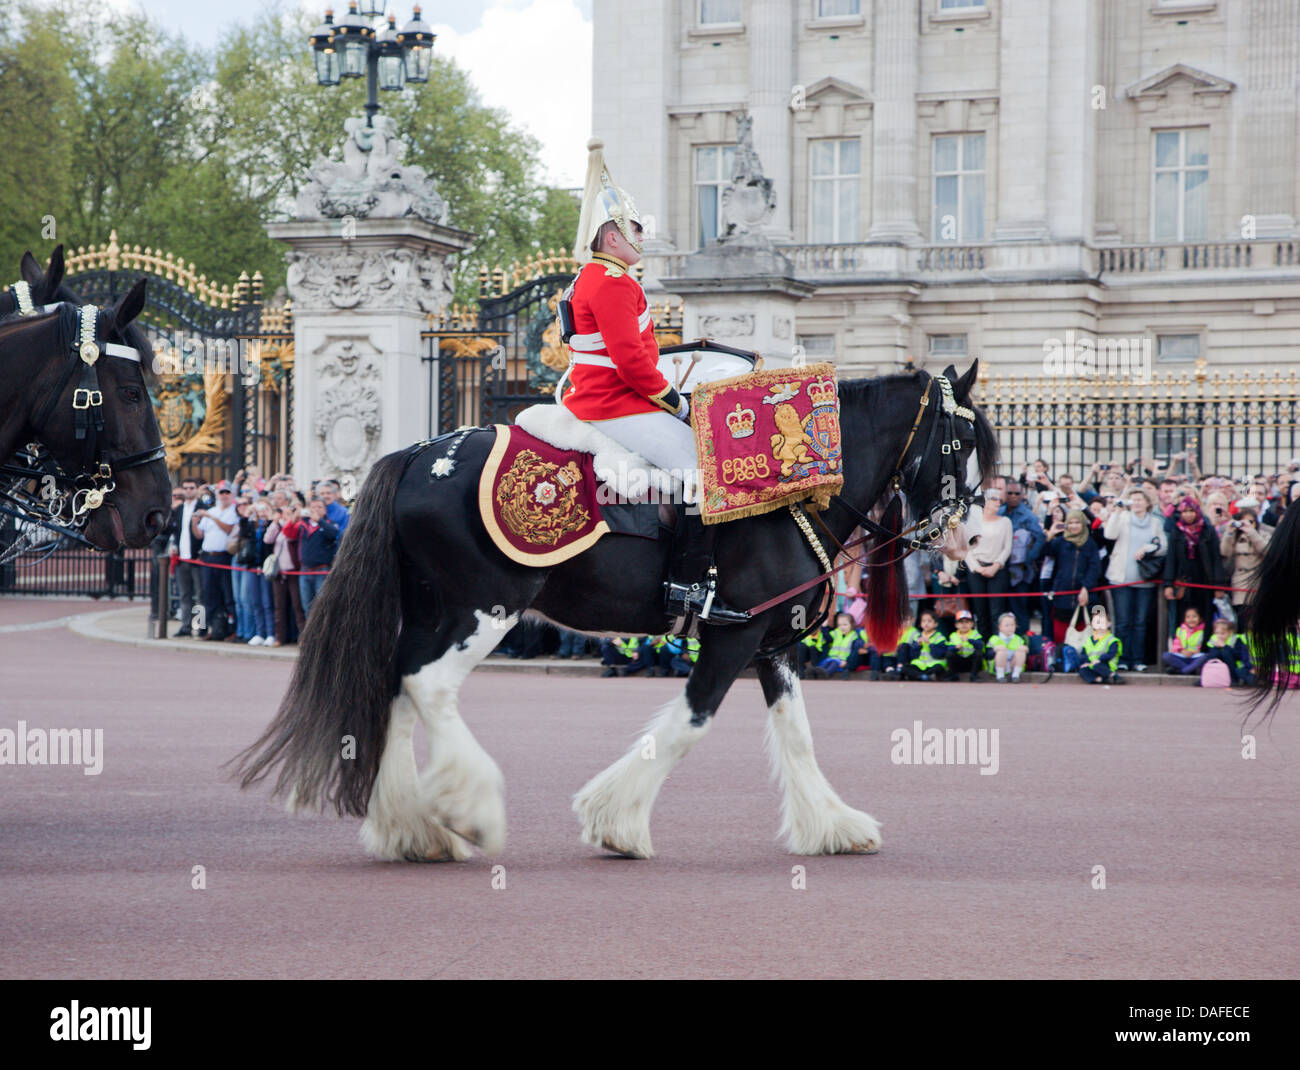 LONDON - 17 Mai: Britische königliche Garde auf Pferd Reiten und führen Sie die Wachablösung im Buckingham Palace am 17. Mai 2013 Stockfoto